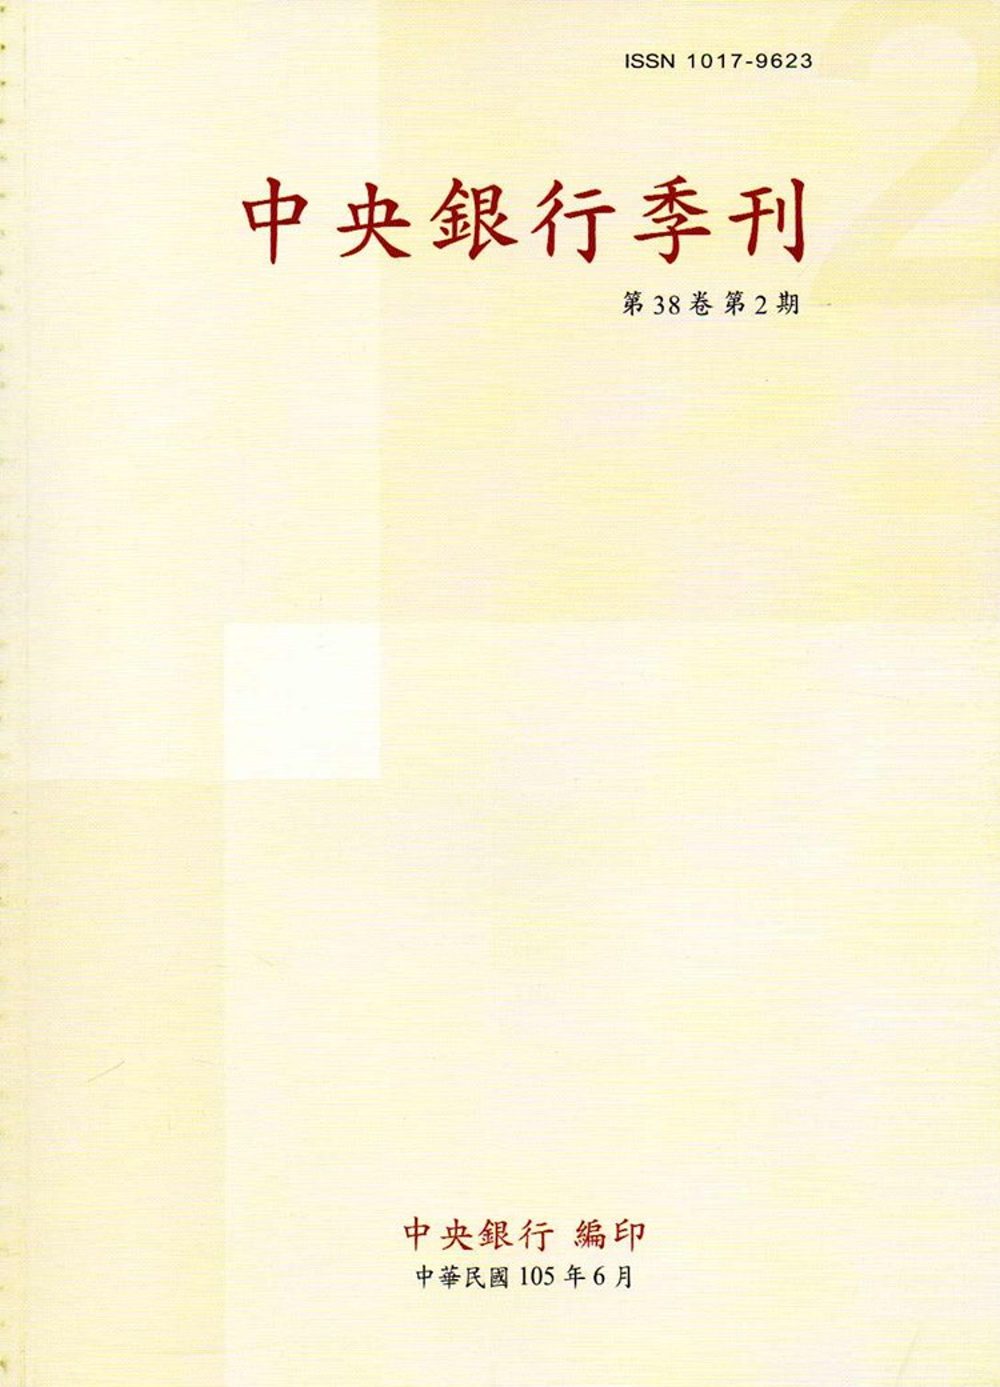 中央銀行季刊38卷2期(105.06)